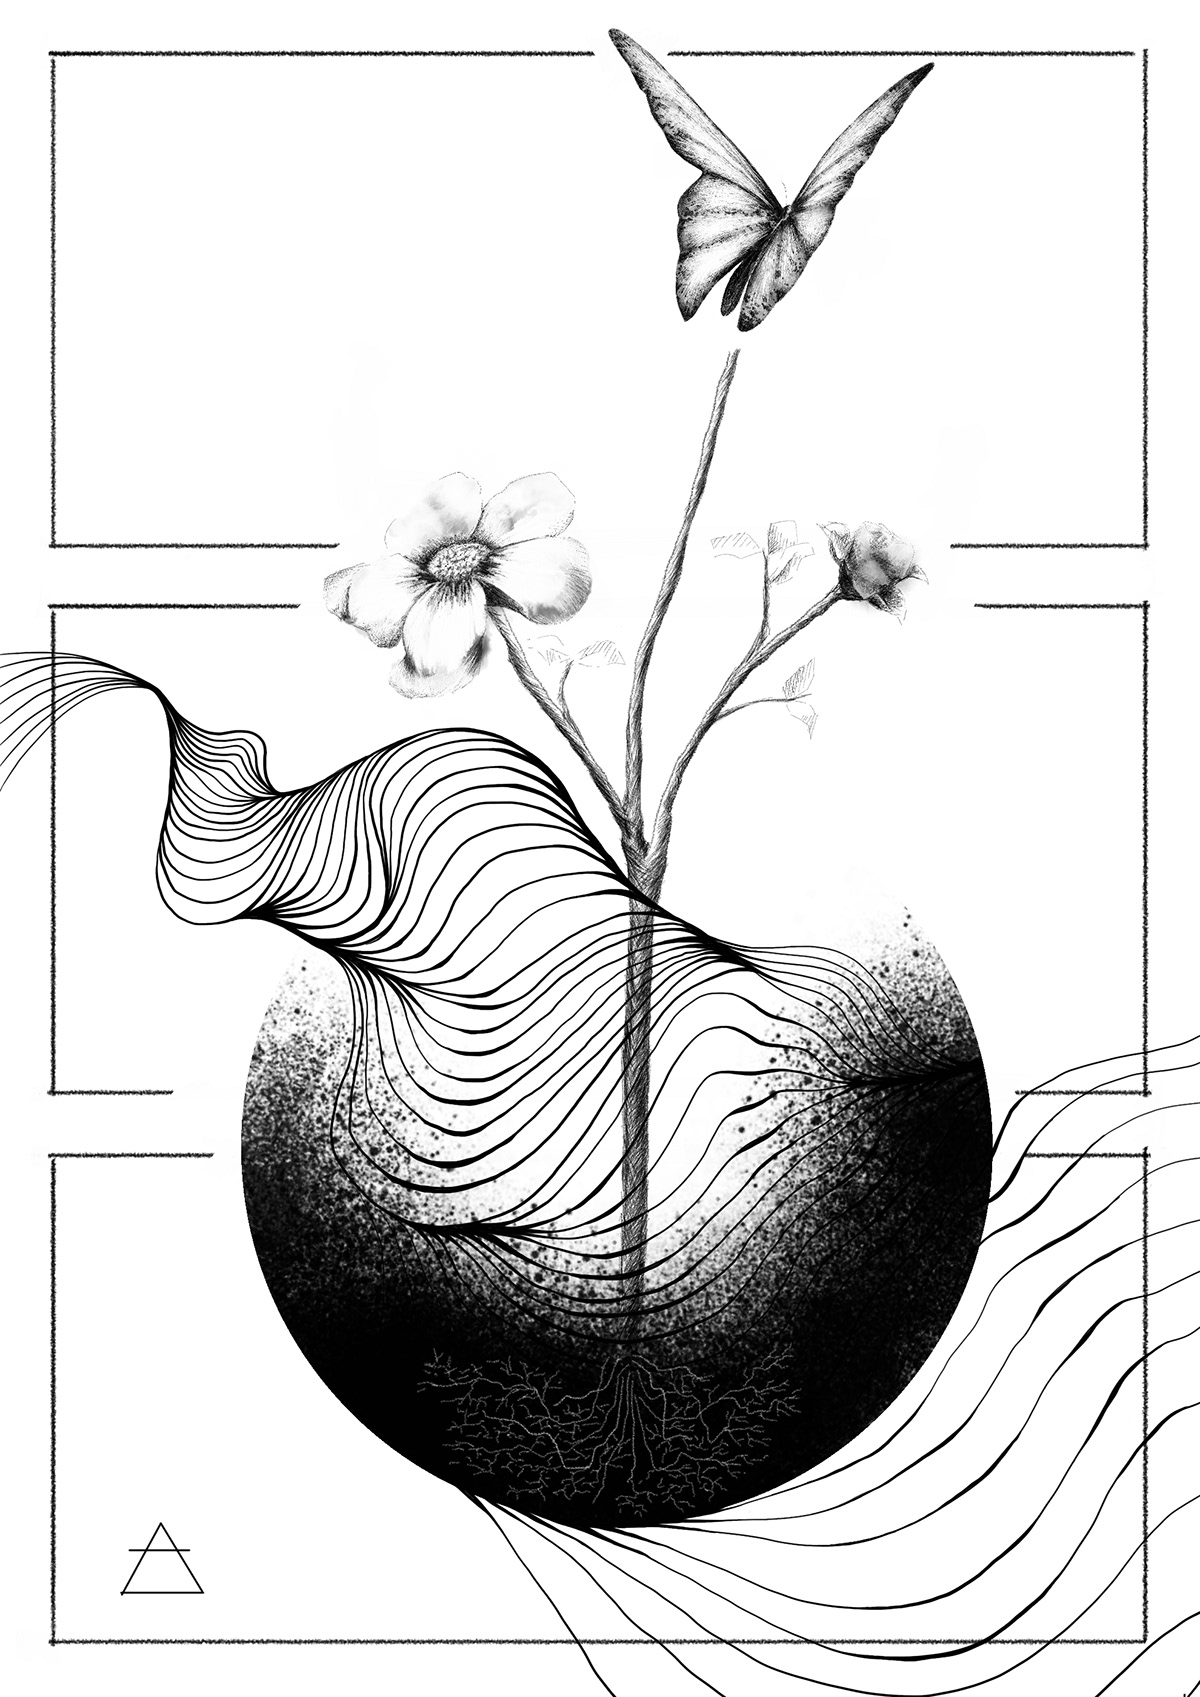 revista literaria AGORA ilustración fotografica blanco y negro concepto y producción